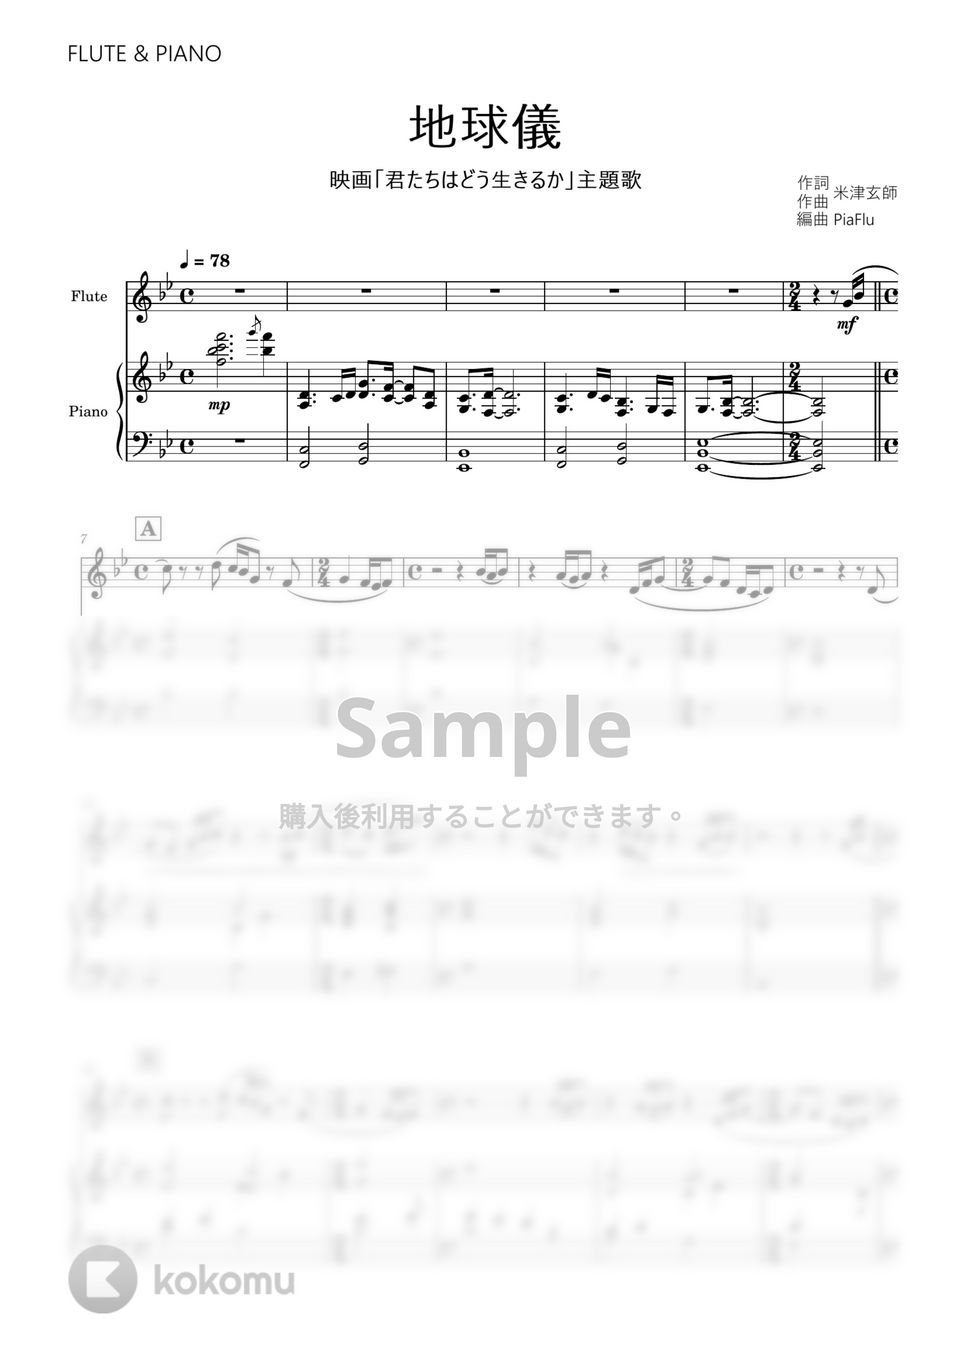 米津玄師 - 地球儀 (フルート&ピアノ伴奏) by PiaFlu